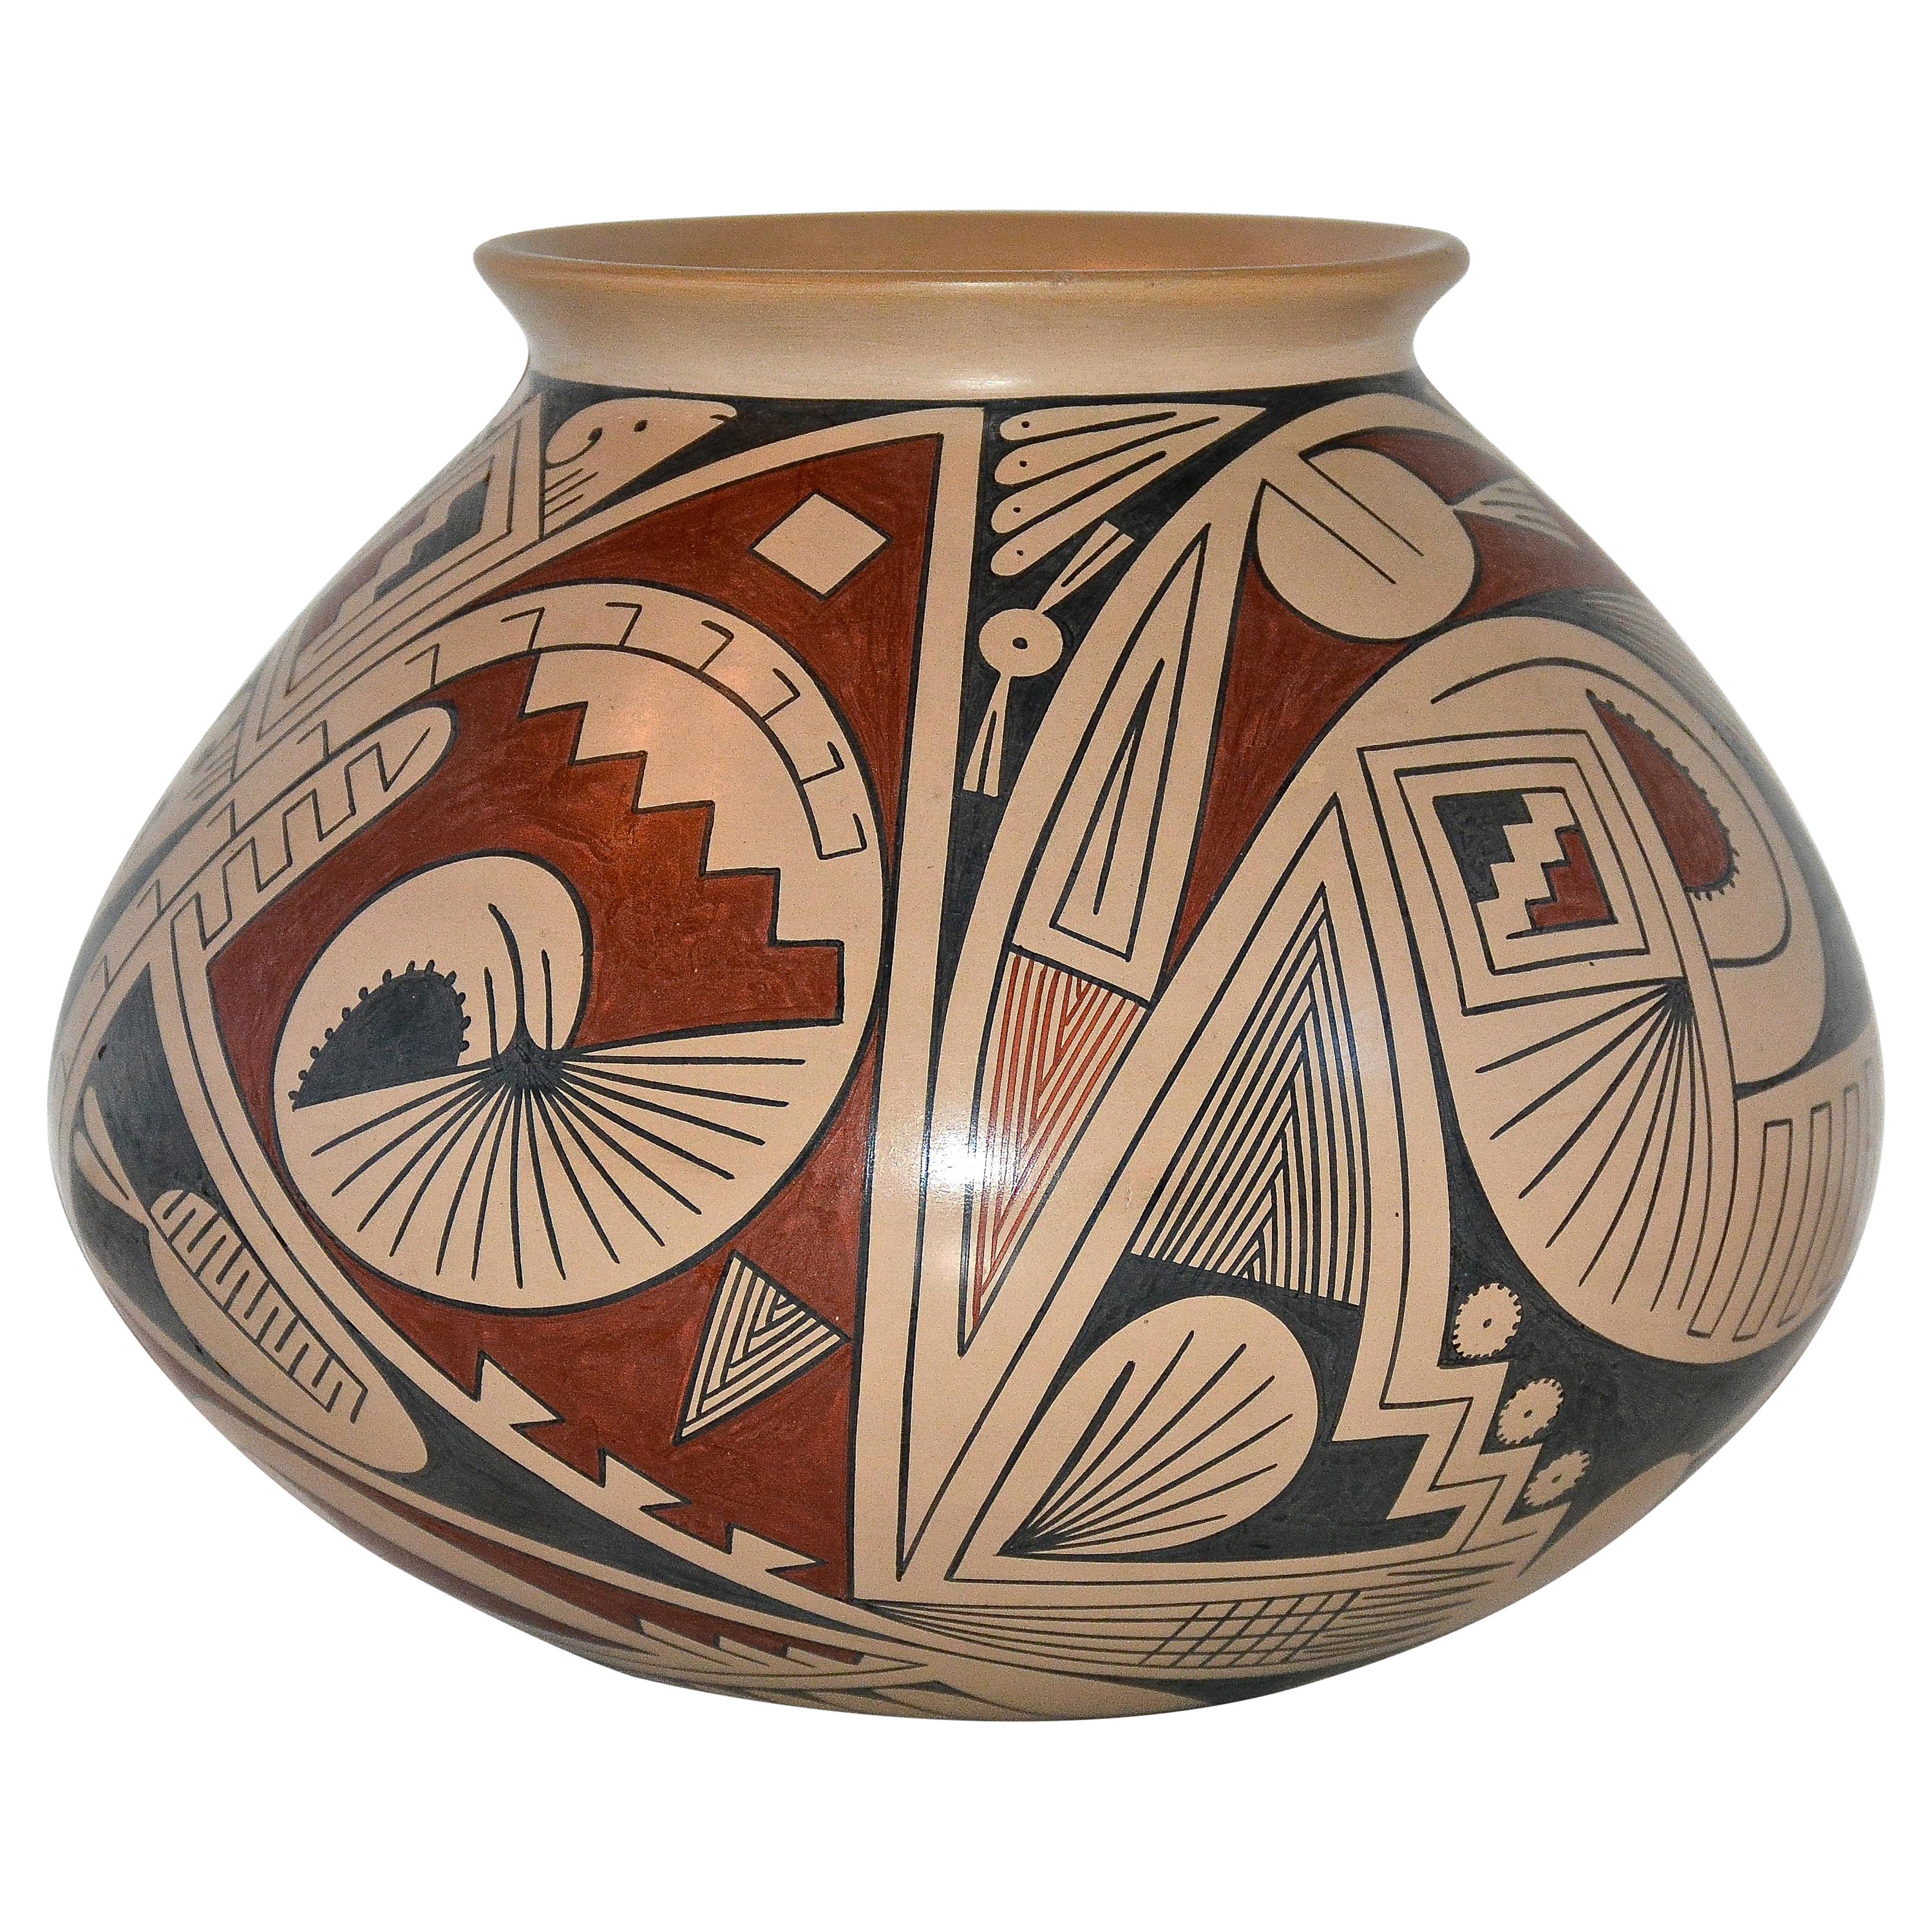 Mata Ortiz Polychrome Pottery Vessel by Pilo Mora, 1990